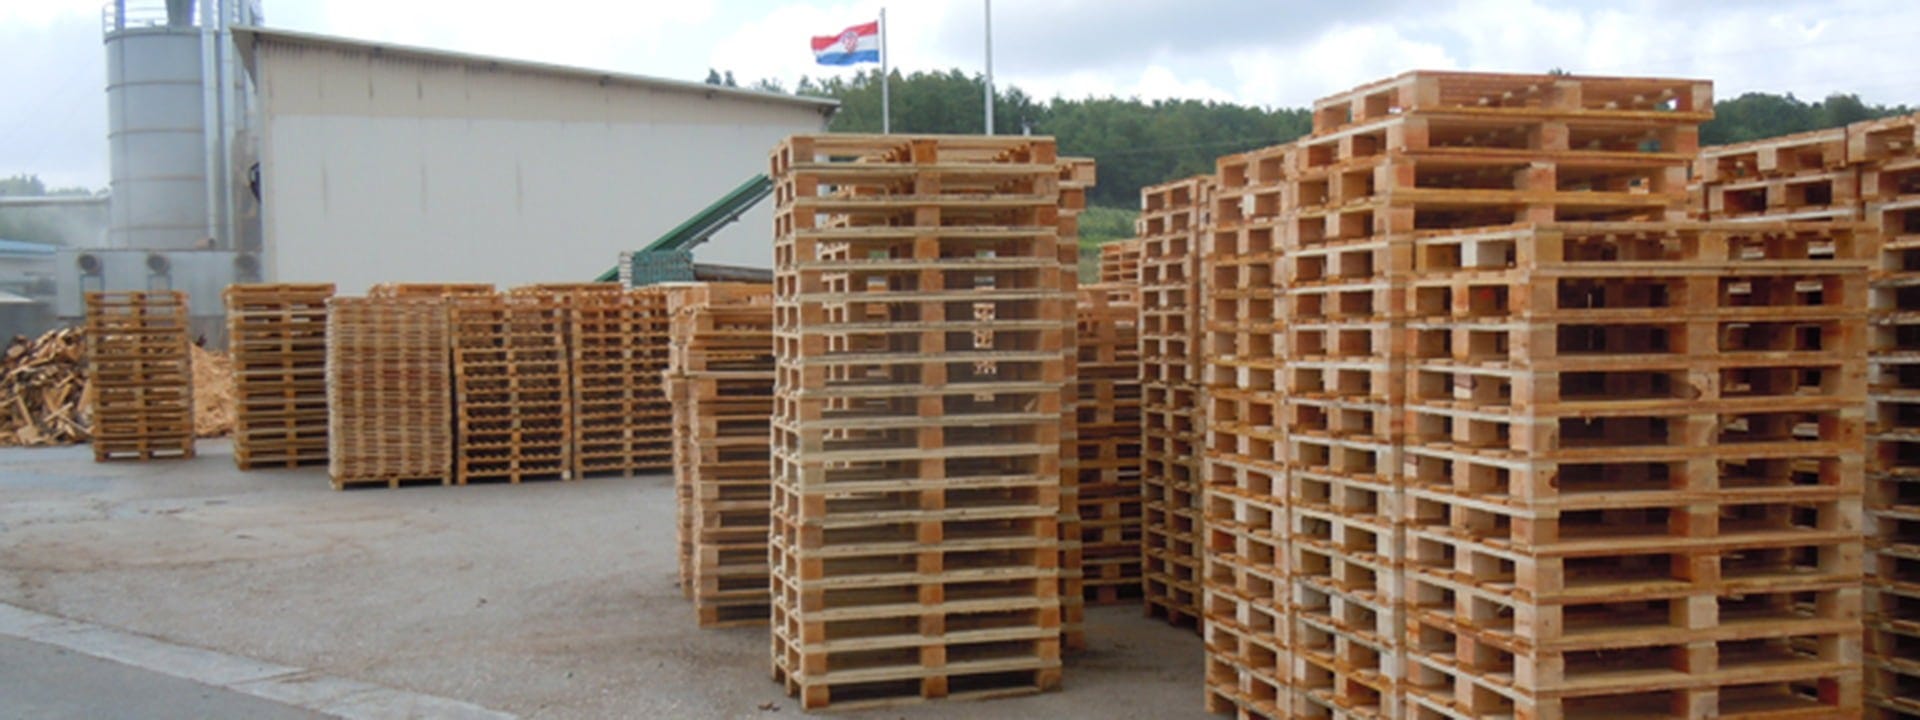 Croatian pallet producer Koscal company